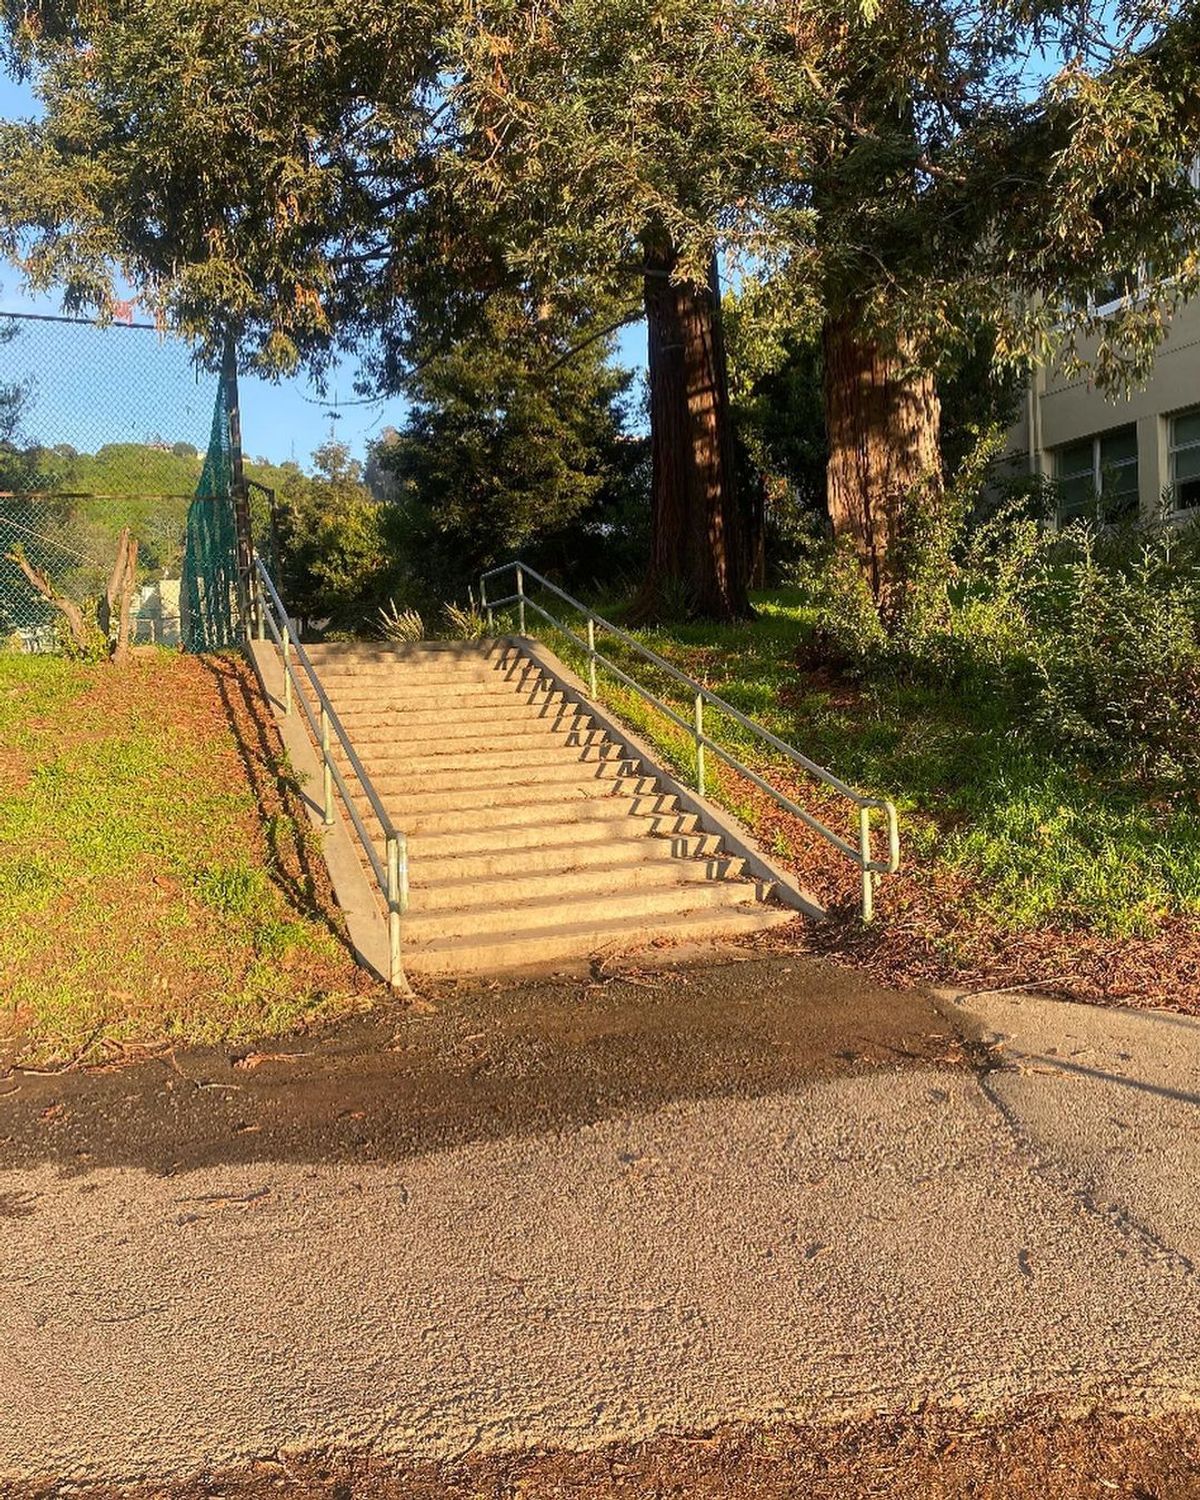 Image for skate spot Castro Park - 18 Stair Rail